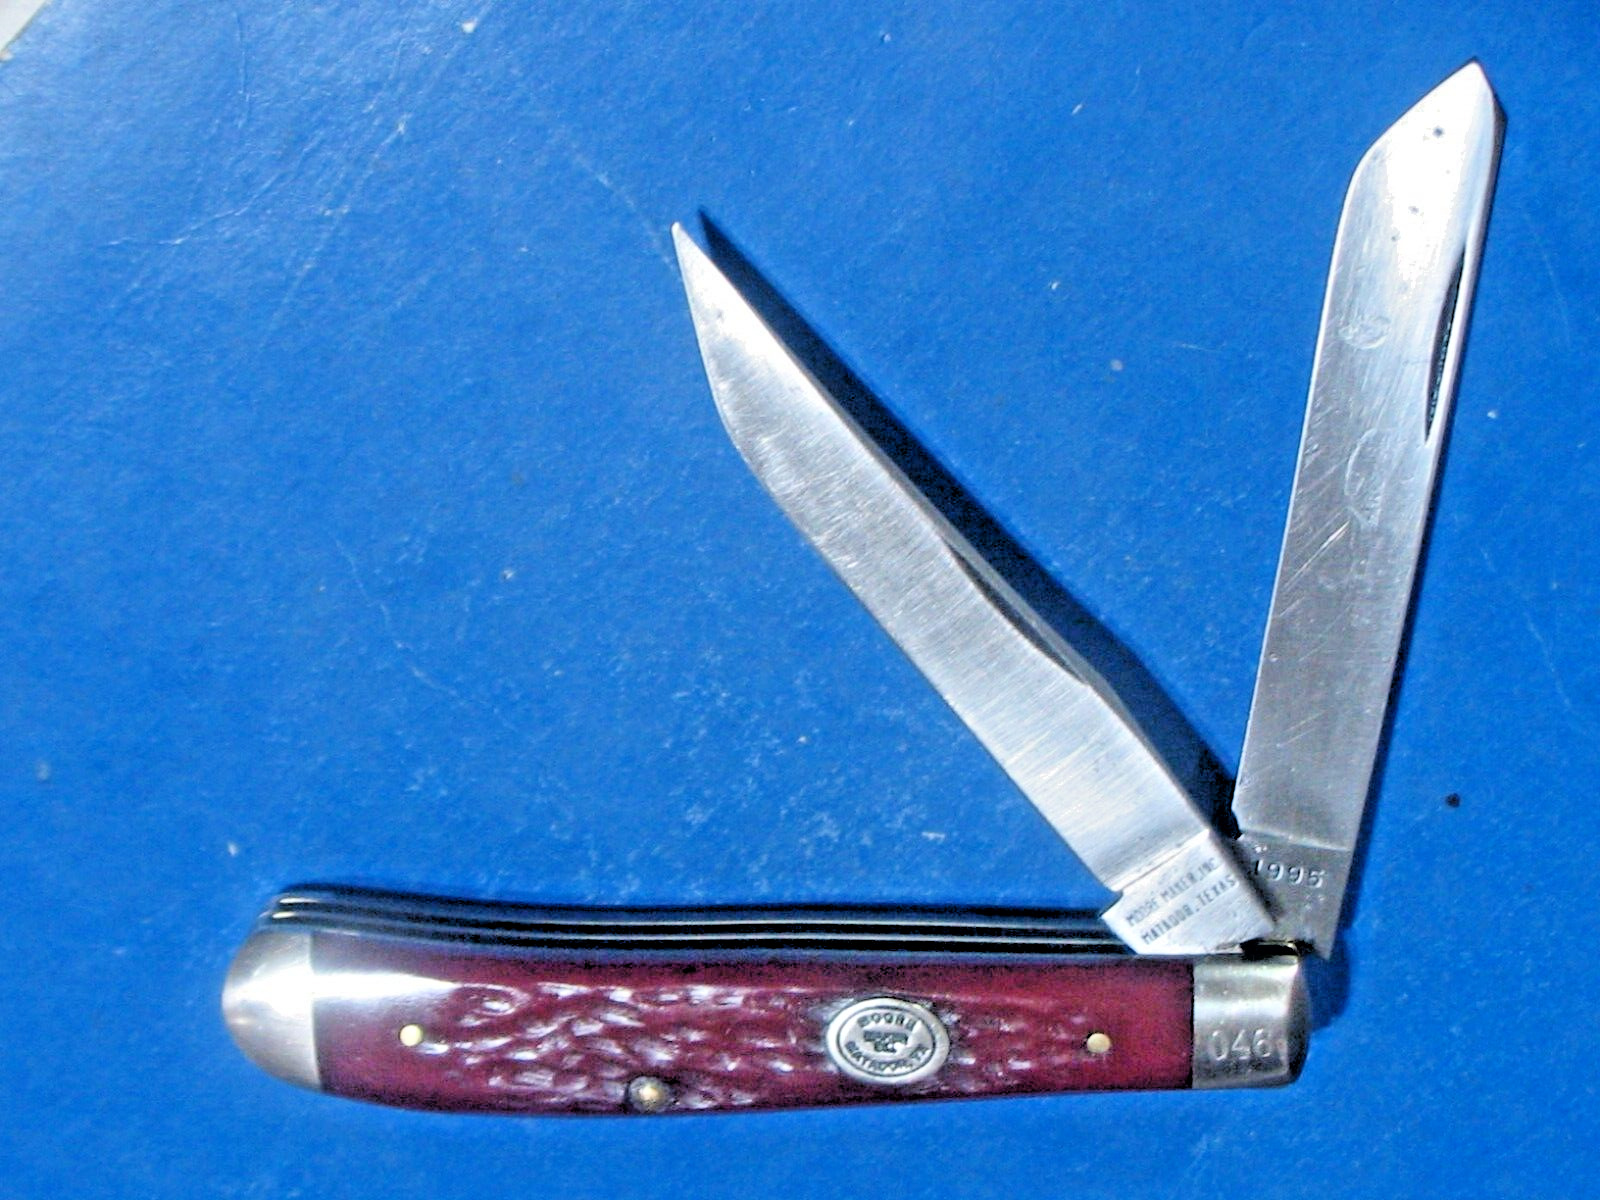 Vtg  1995 Moore Maker Red Bone Trapper Serial Number 046  Pocket Knife USA